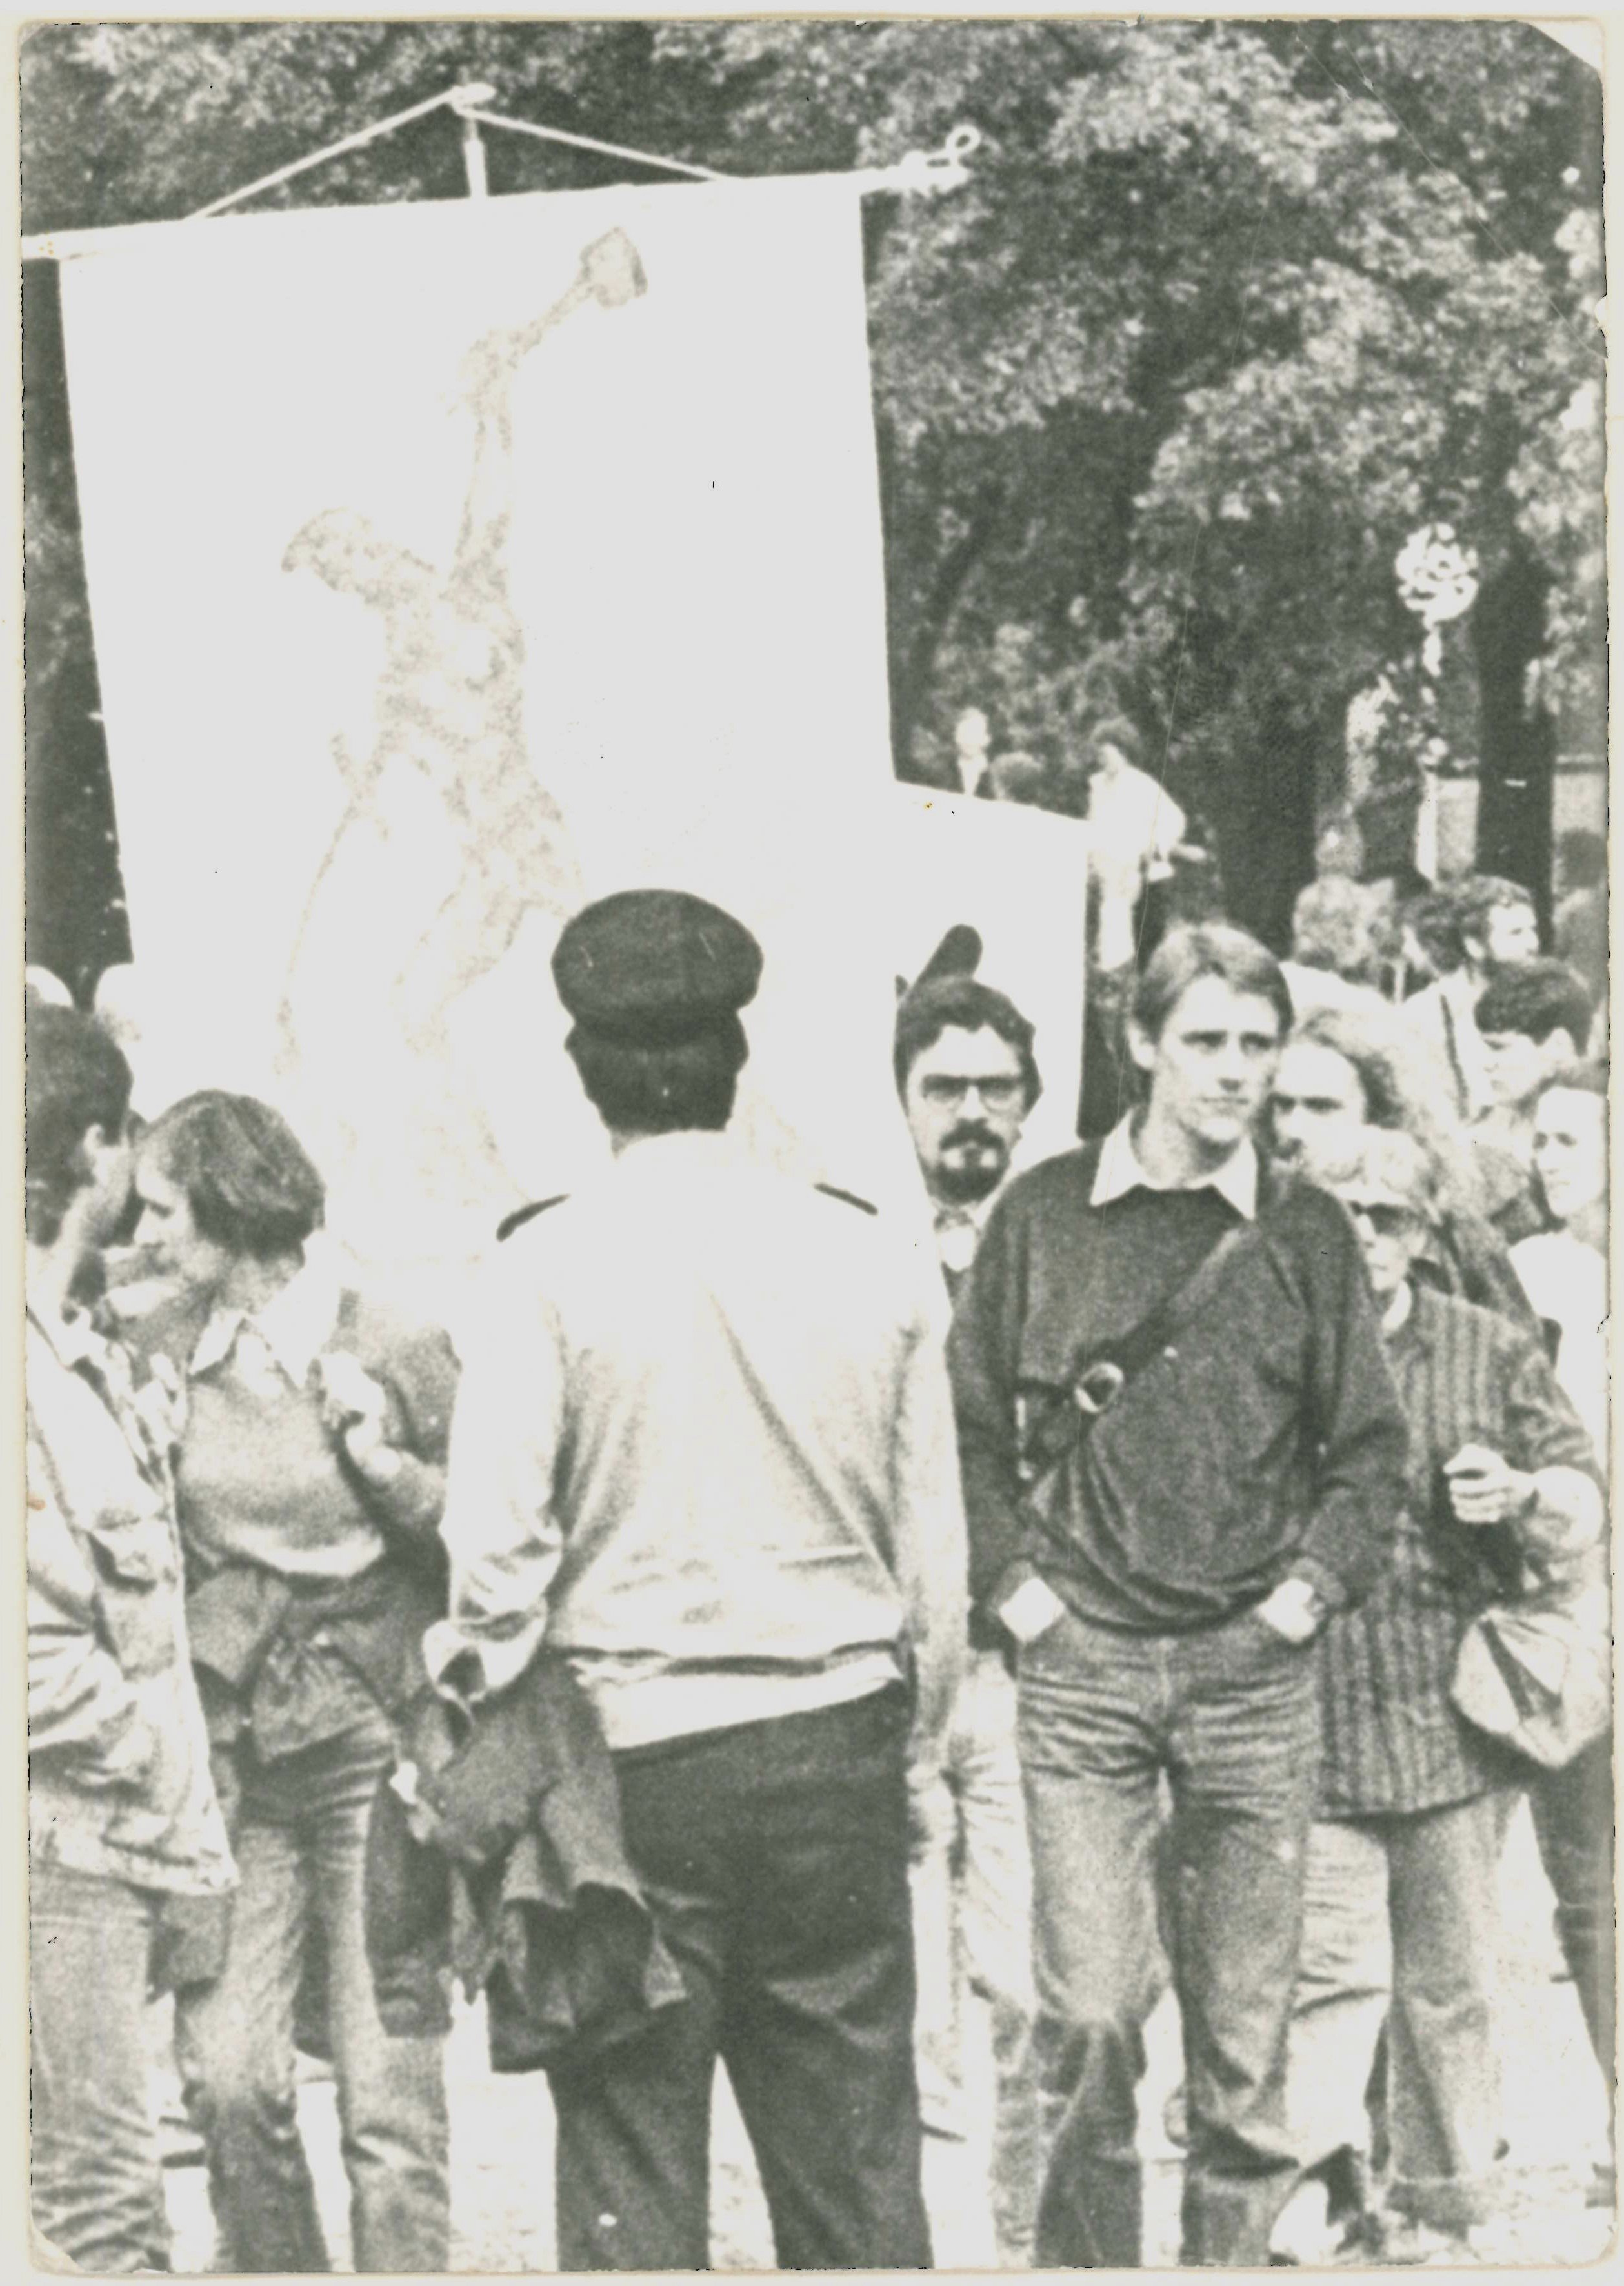 Olof-Palme-Marsch 1987: Hans Peter Freimark mit einem Transparent: "Schwerter zu Pflugscharen" (DDR Geschichtsmuseum im Dokumentationszentrum Perleberg CC BY-SA)